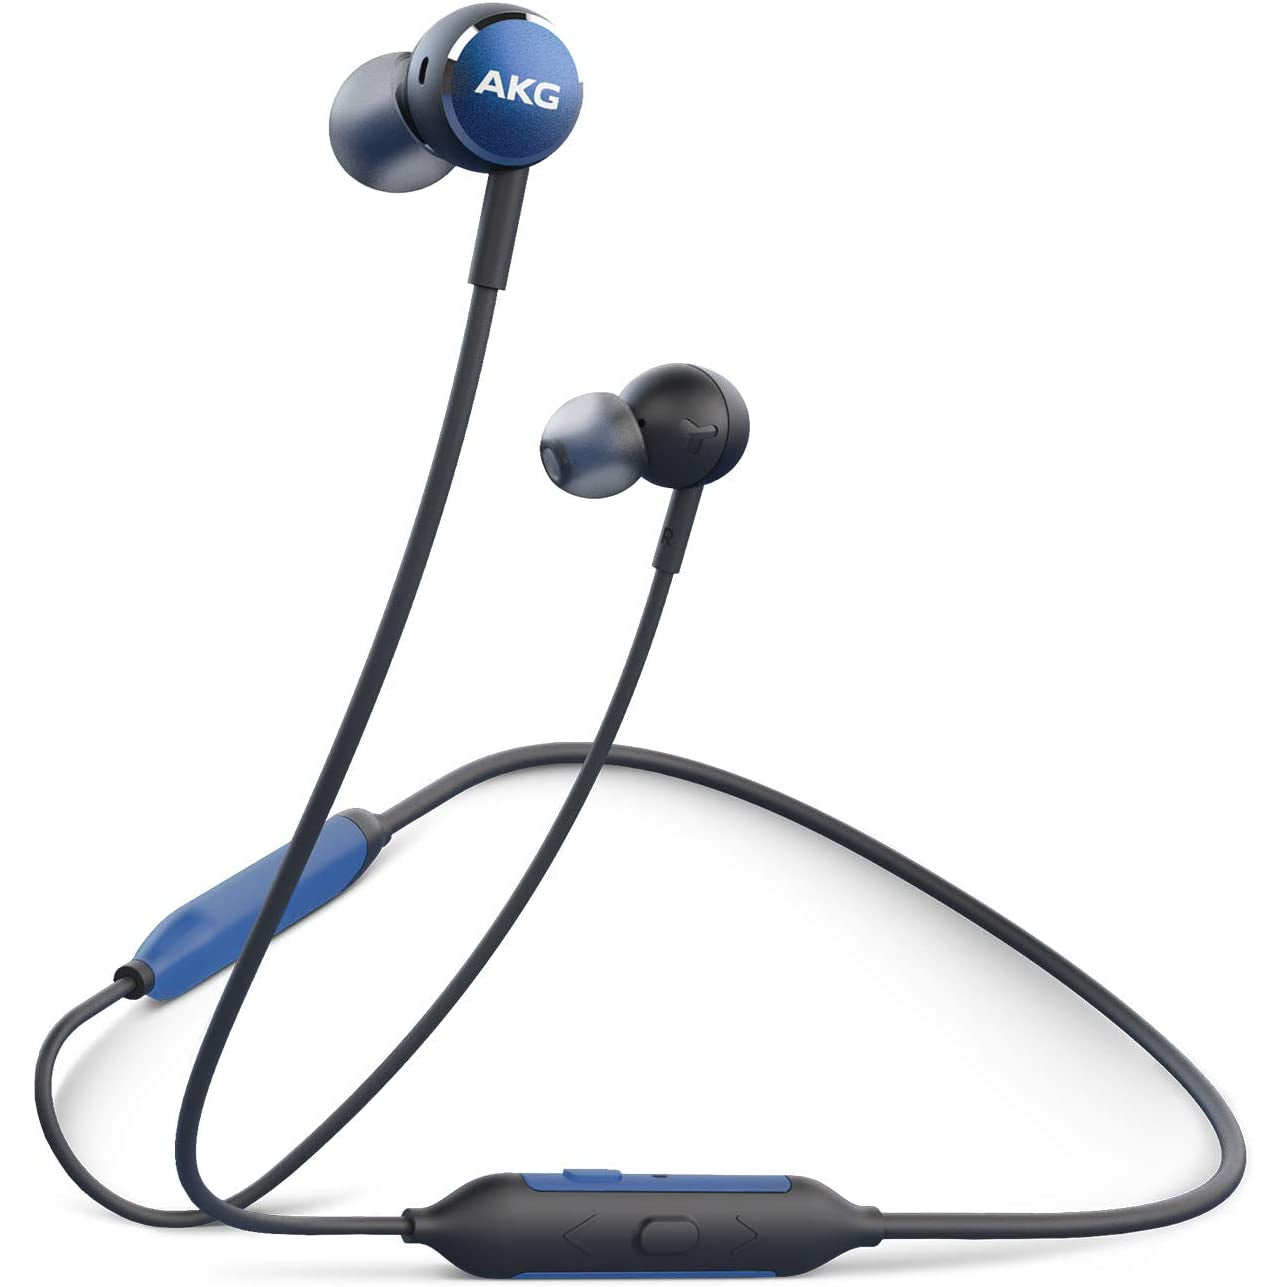 AKG Y100 Wireless In-Ear Headphones - Blue - Refurbished Pristine